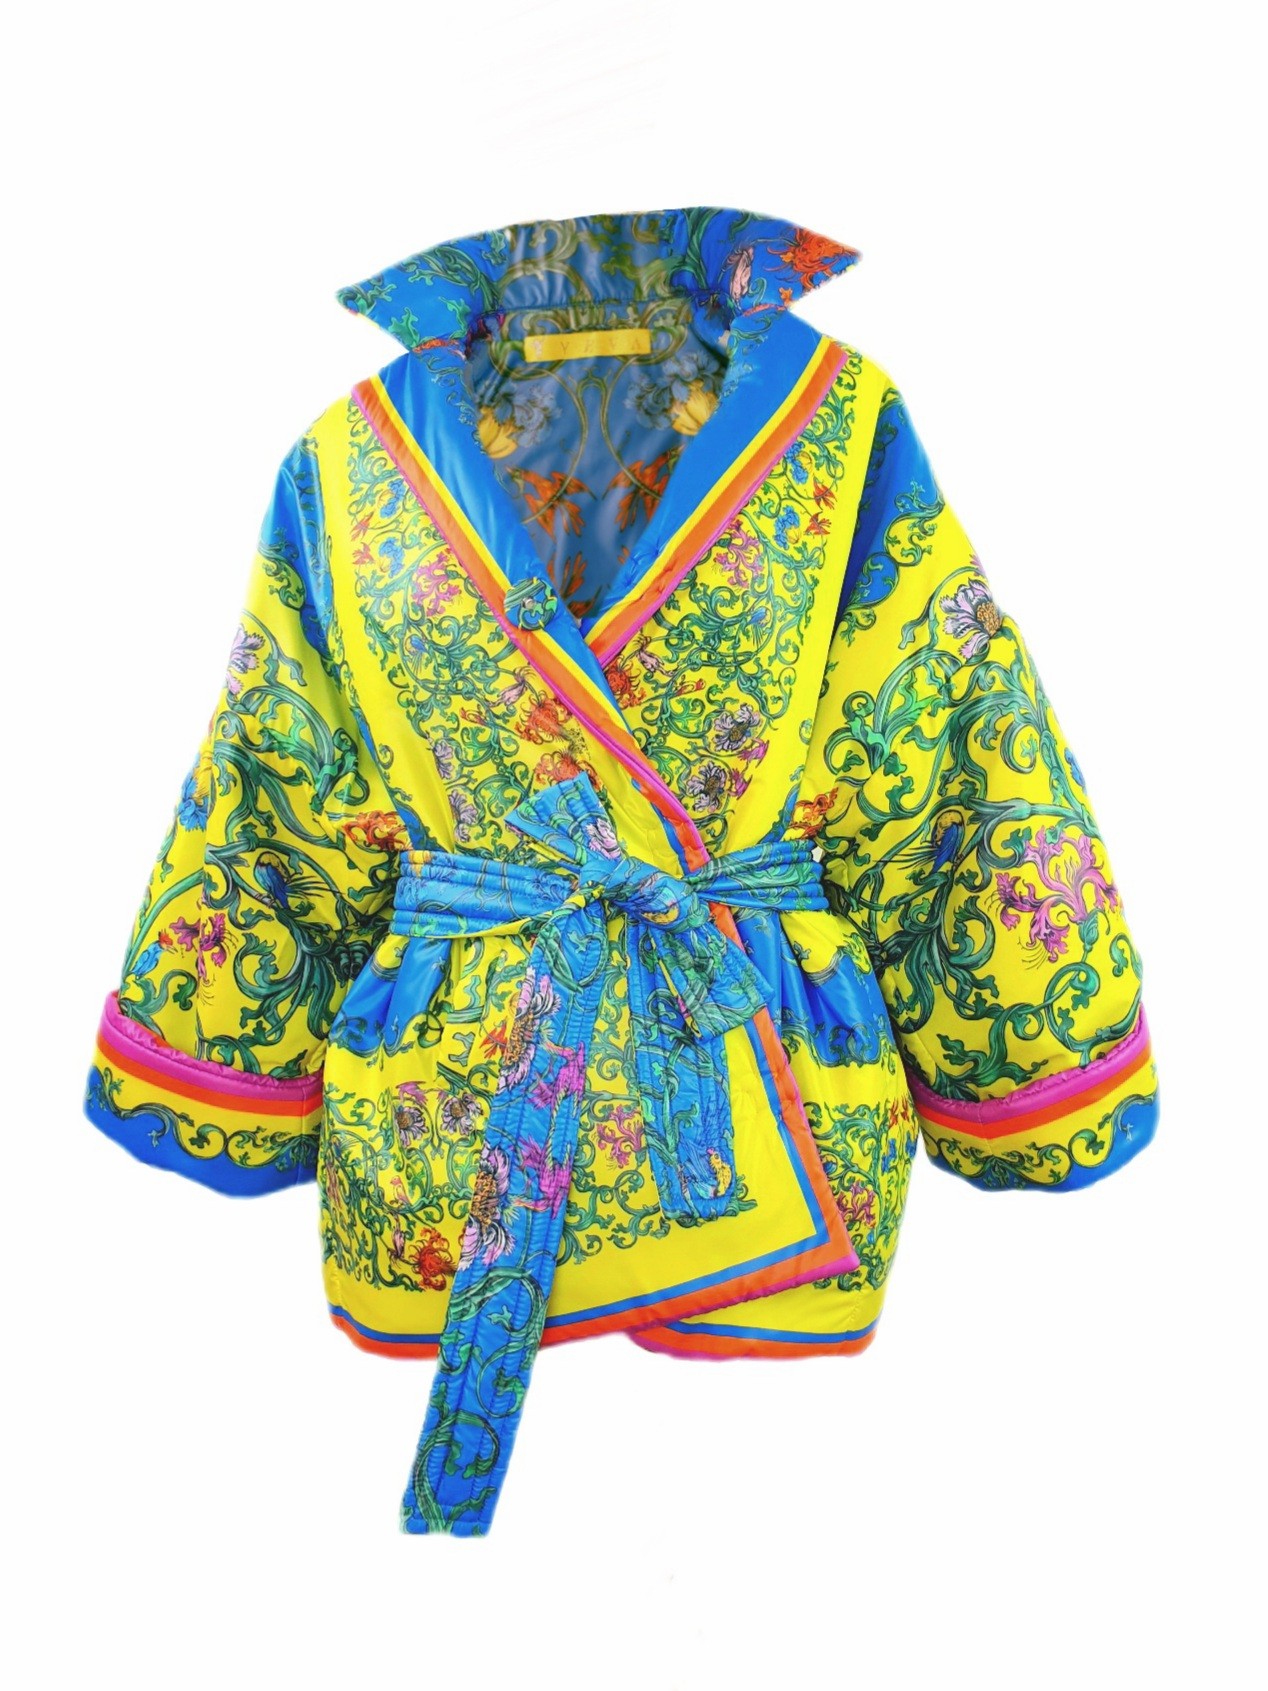 Reversible jacket, yellow/blue, unisex, one size.